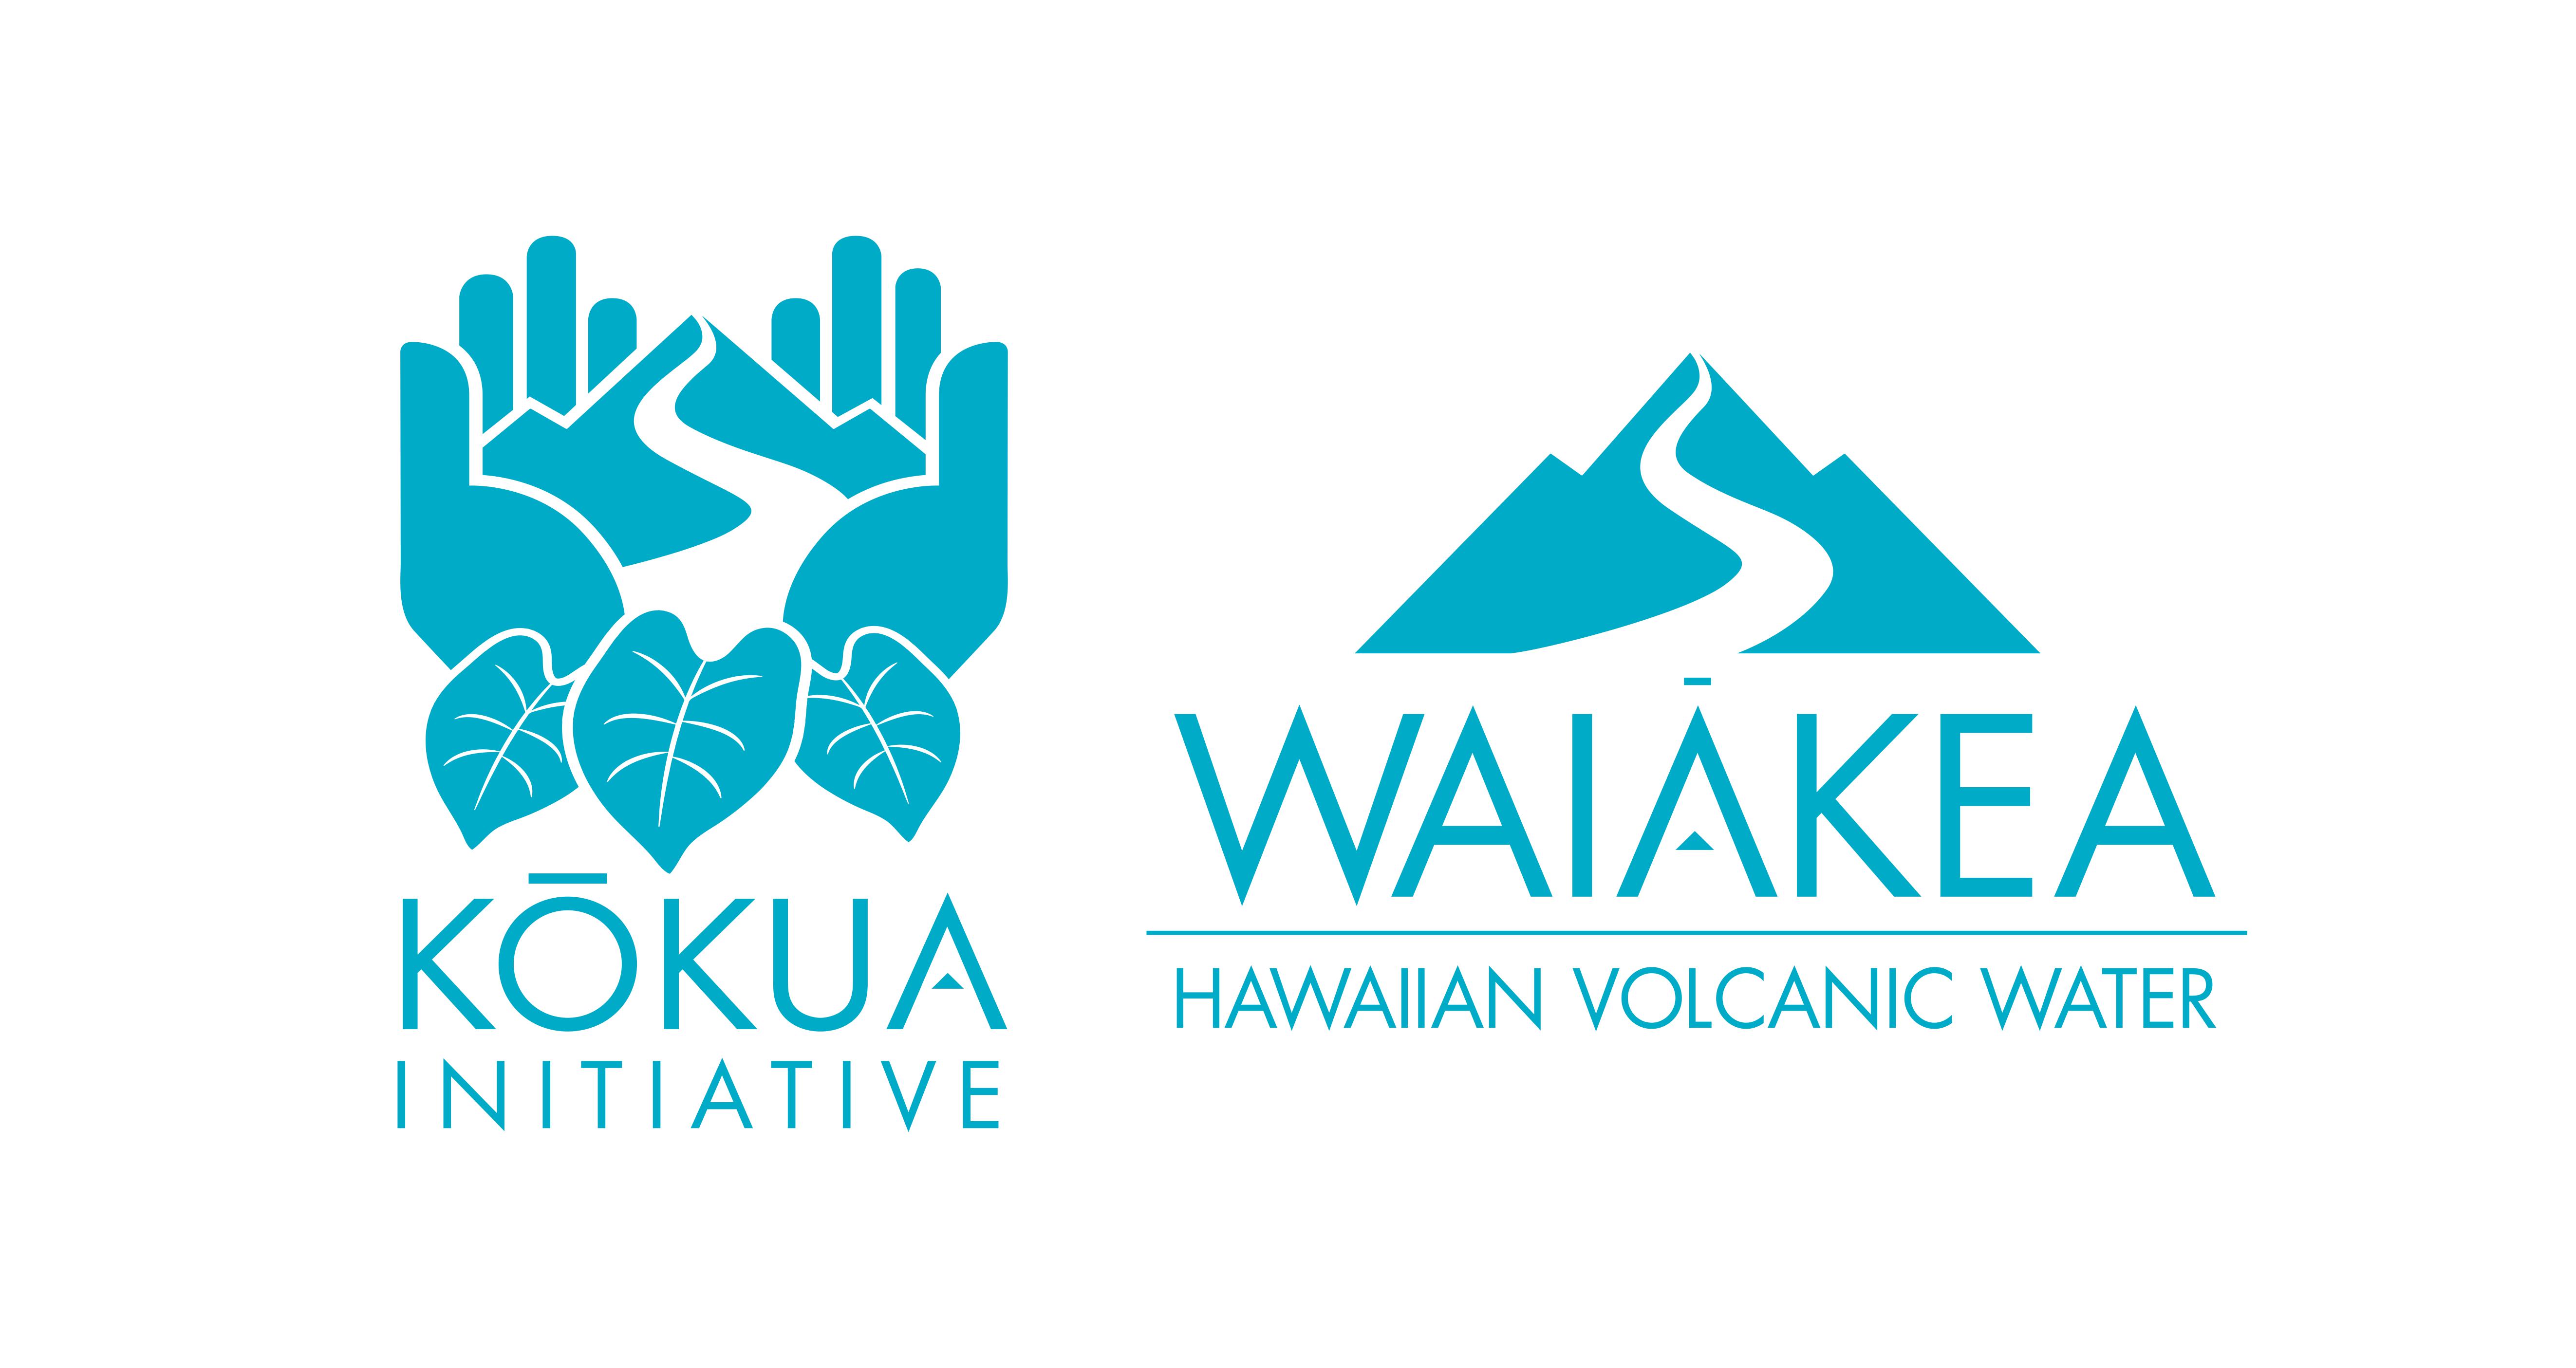 4. Waiakea Hawaiian Volcanic Water (Tier 4)